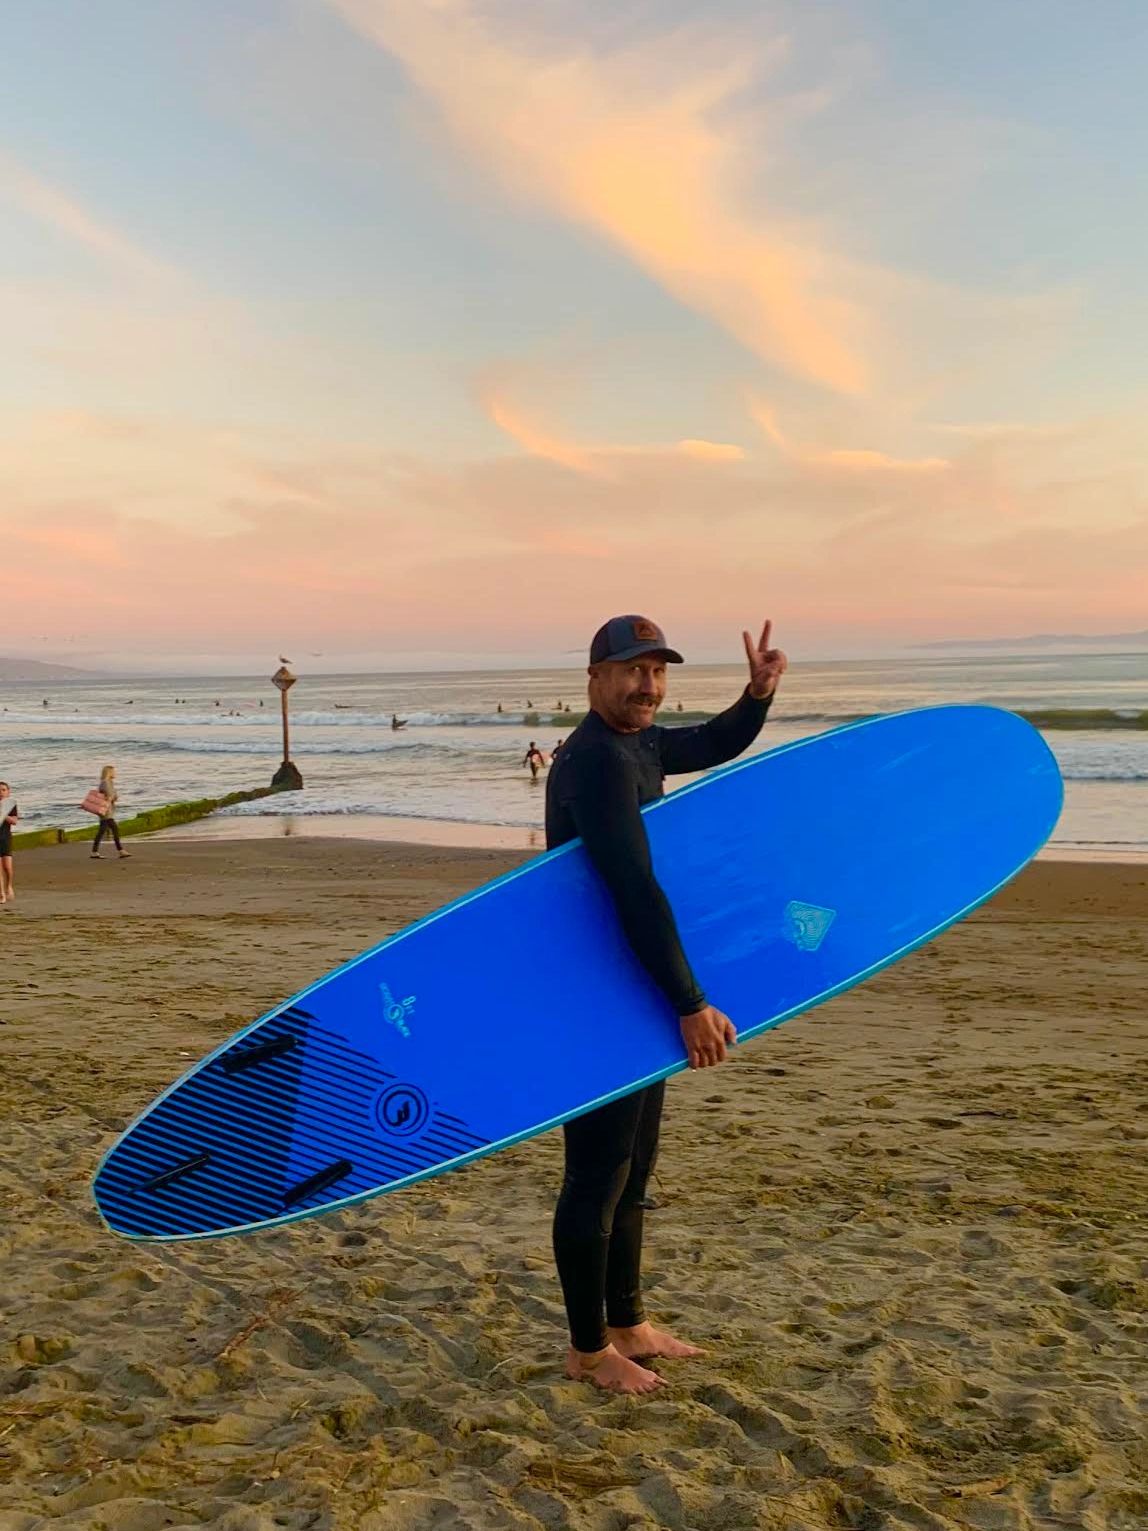 surf surfboard longboard foamboard foamie mustache beach sunset sunrise pink clouds sand ocean wave